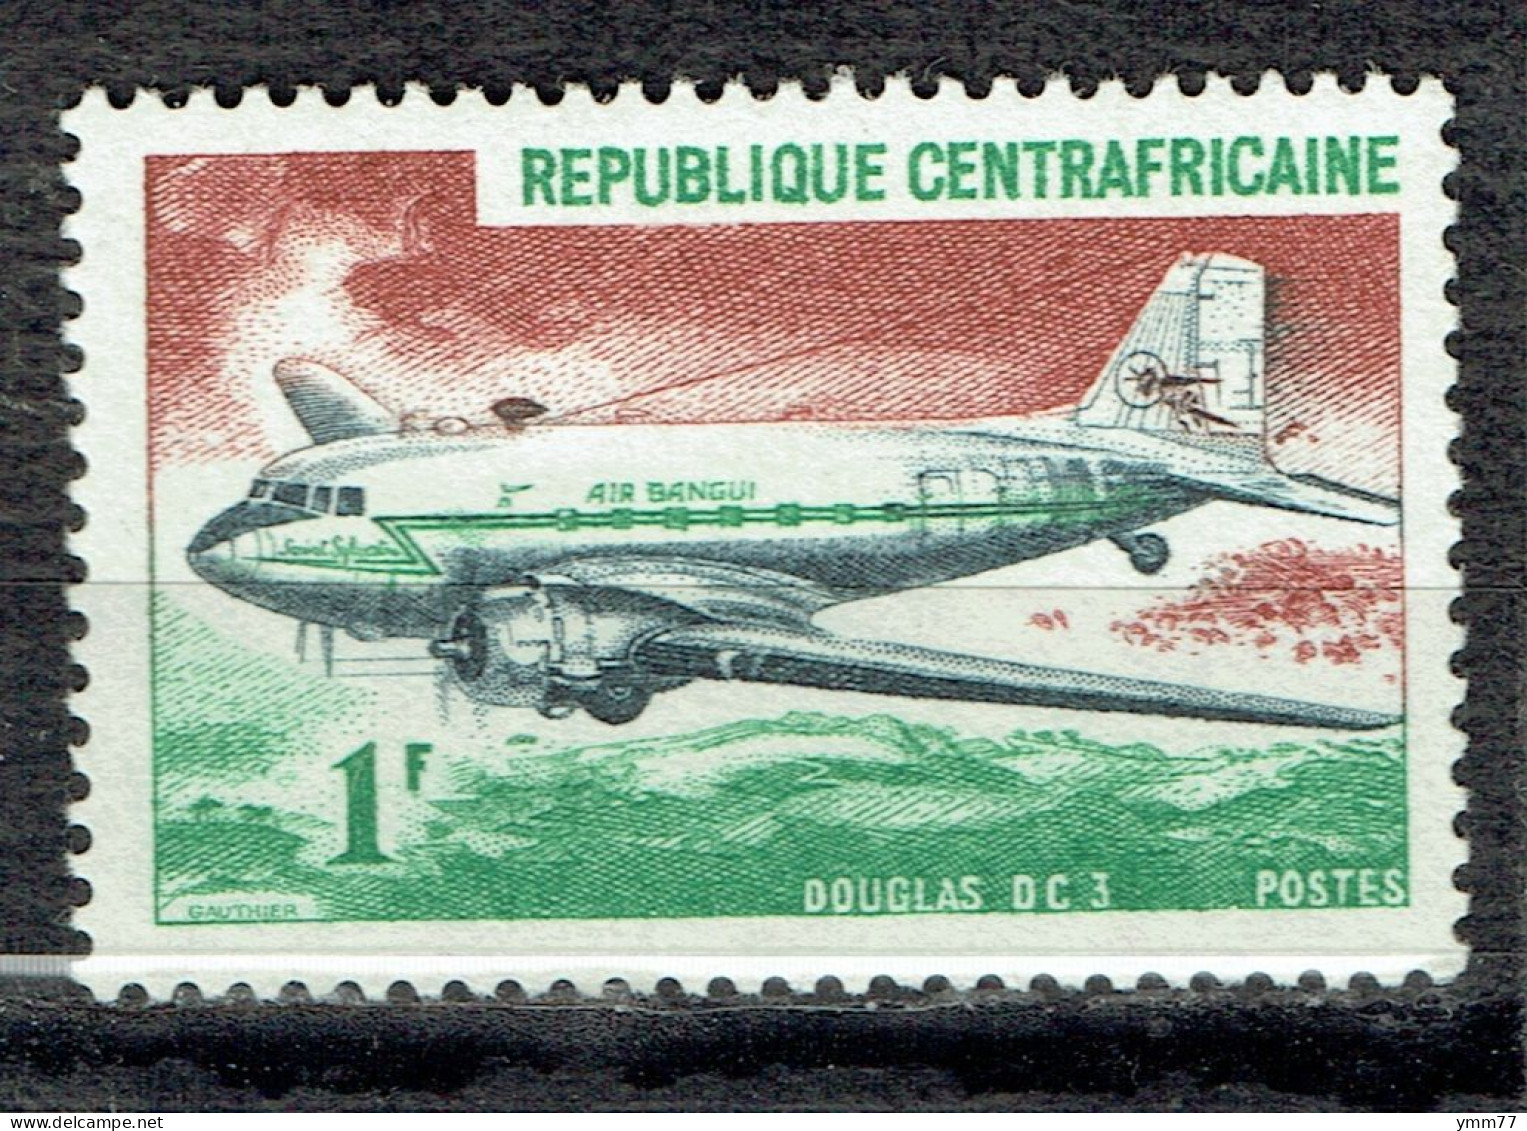 Avion : Douglas DC-3 - Central African Republic